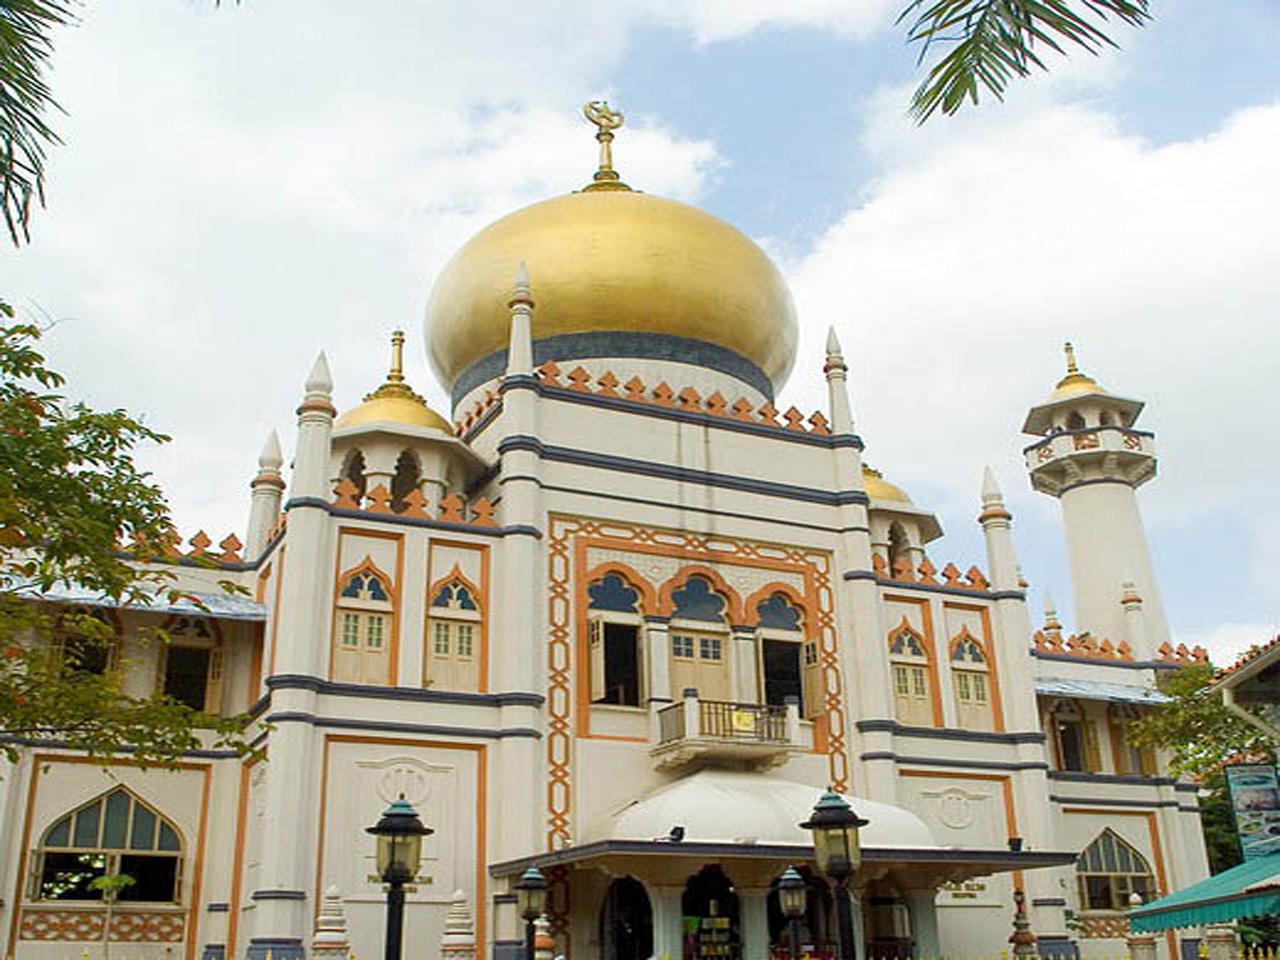 Sultan mosque